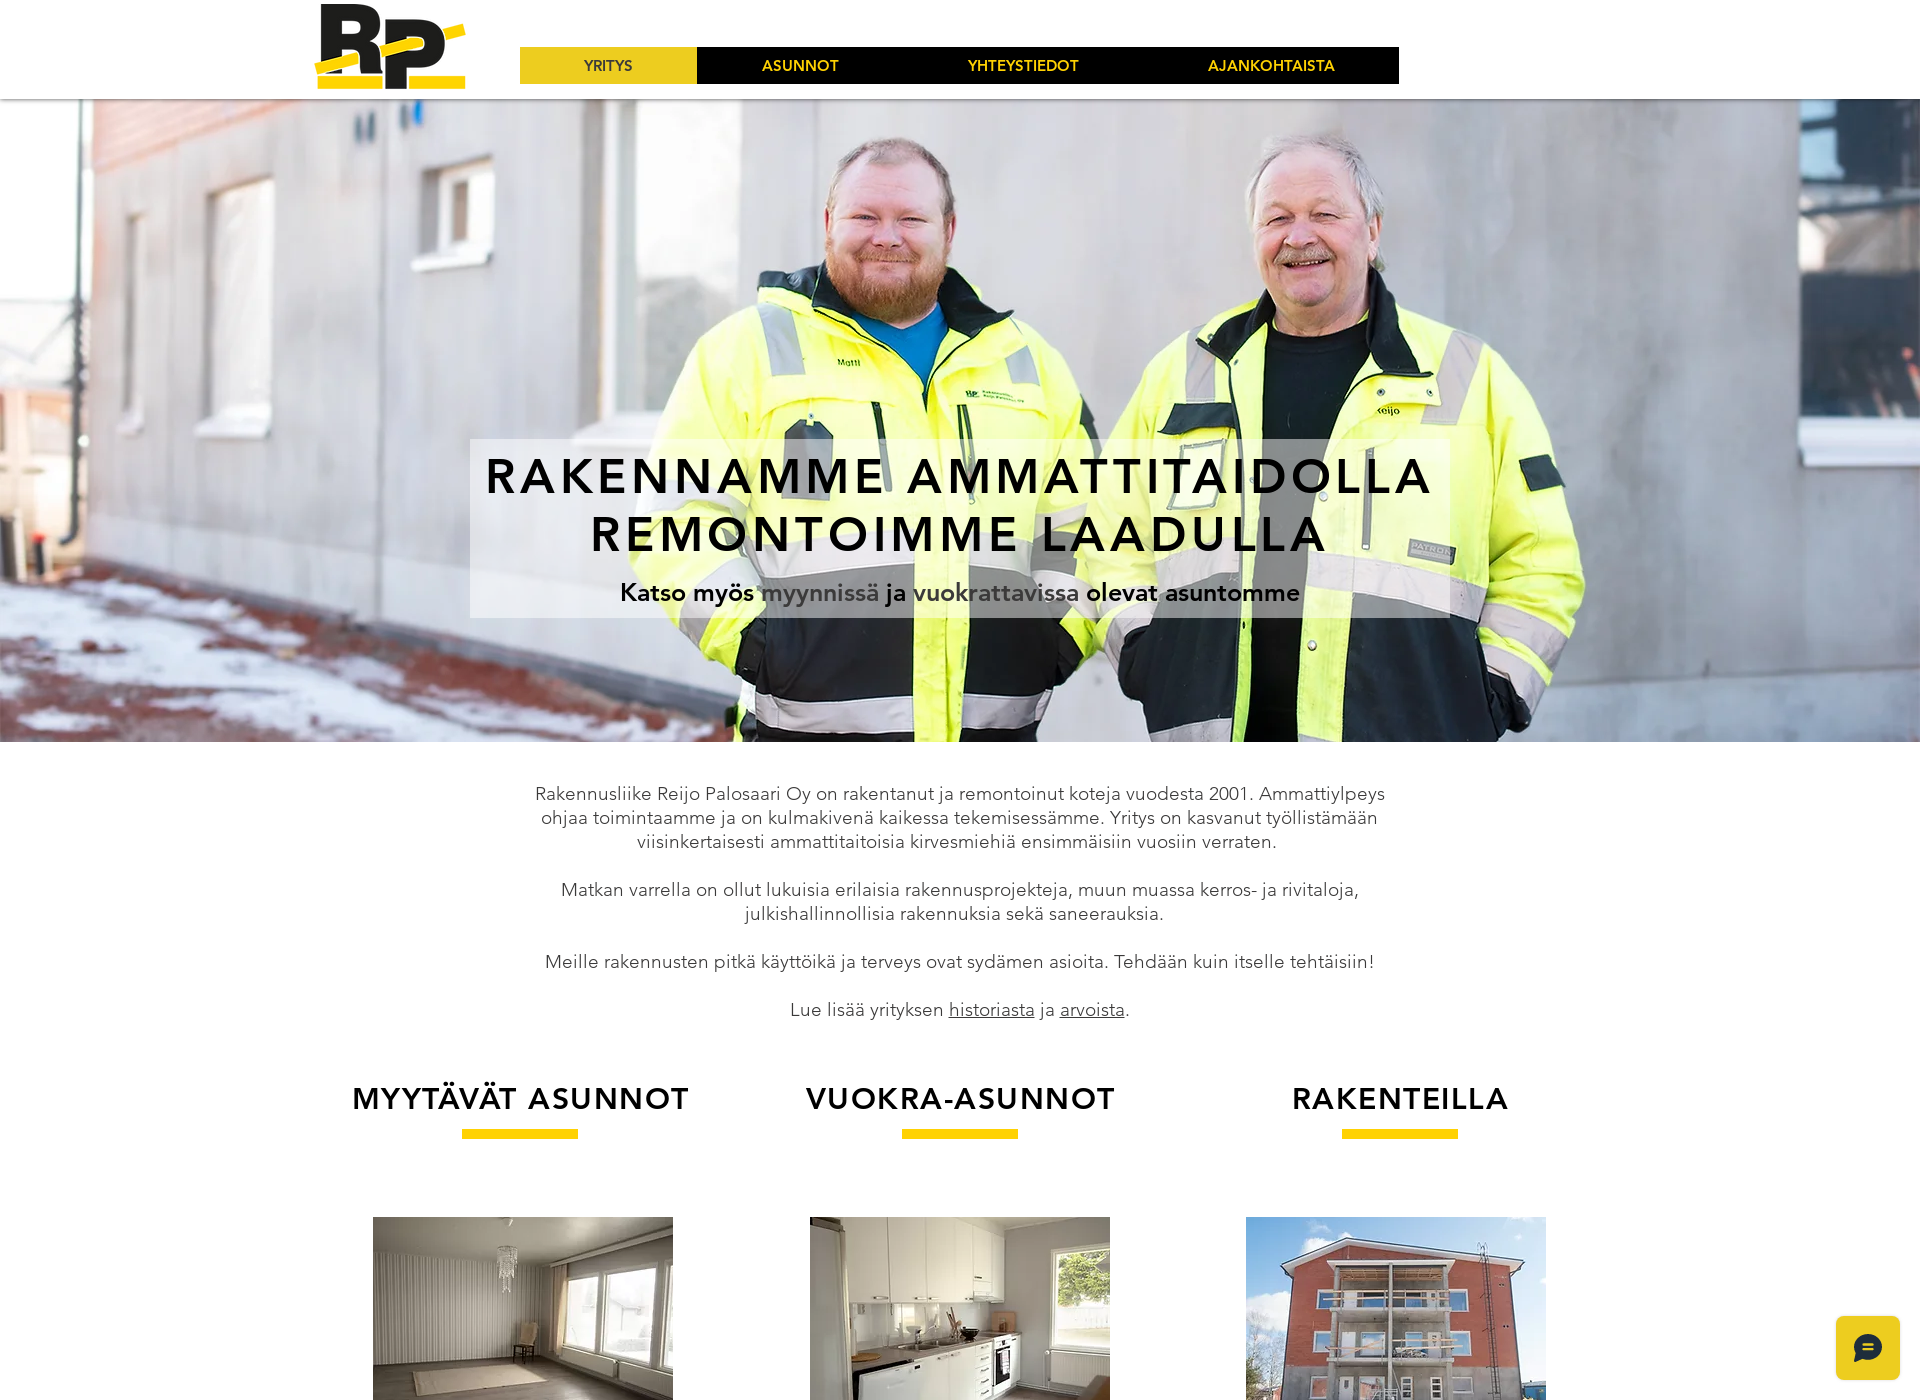 Näyttökuva rakennusliikereijopalosaari.fi